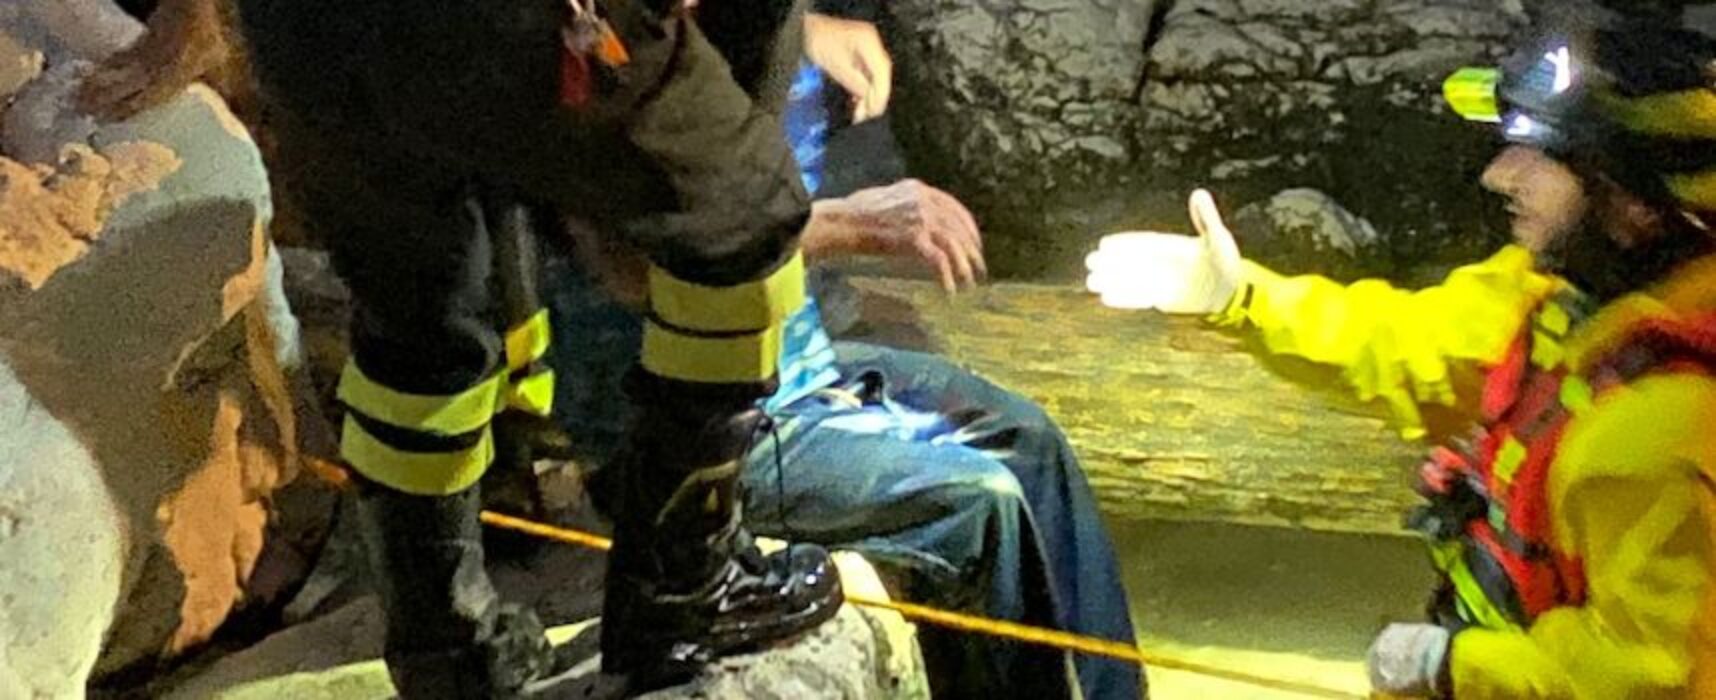 Vigili del Fuoco recuperano uomo da canale scolo acque piovane